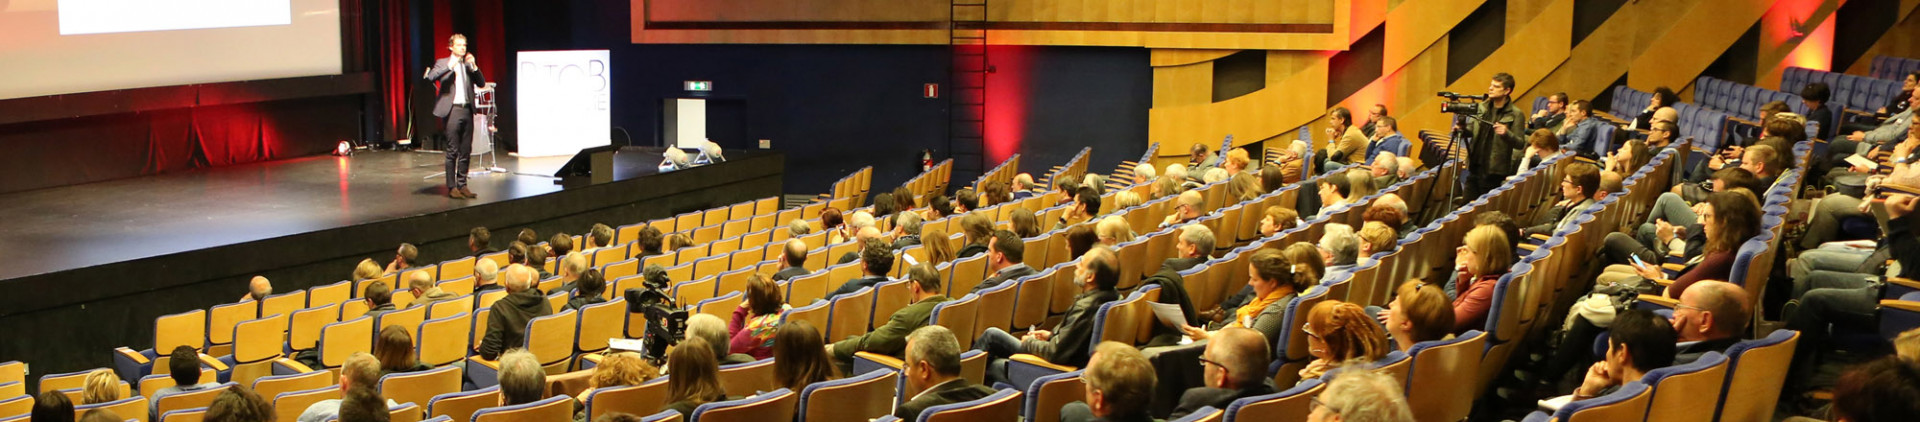 Congres en seminarcentra in provincie Luik